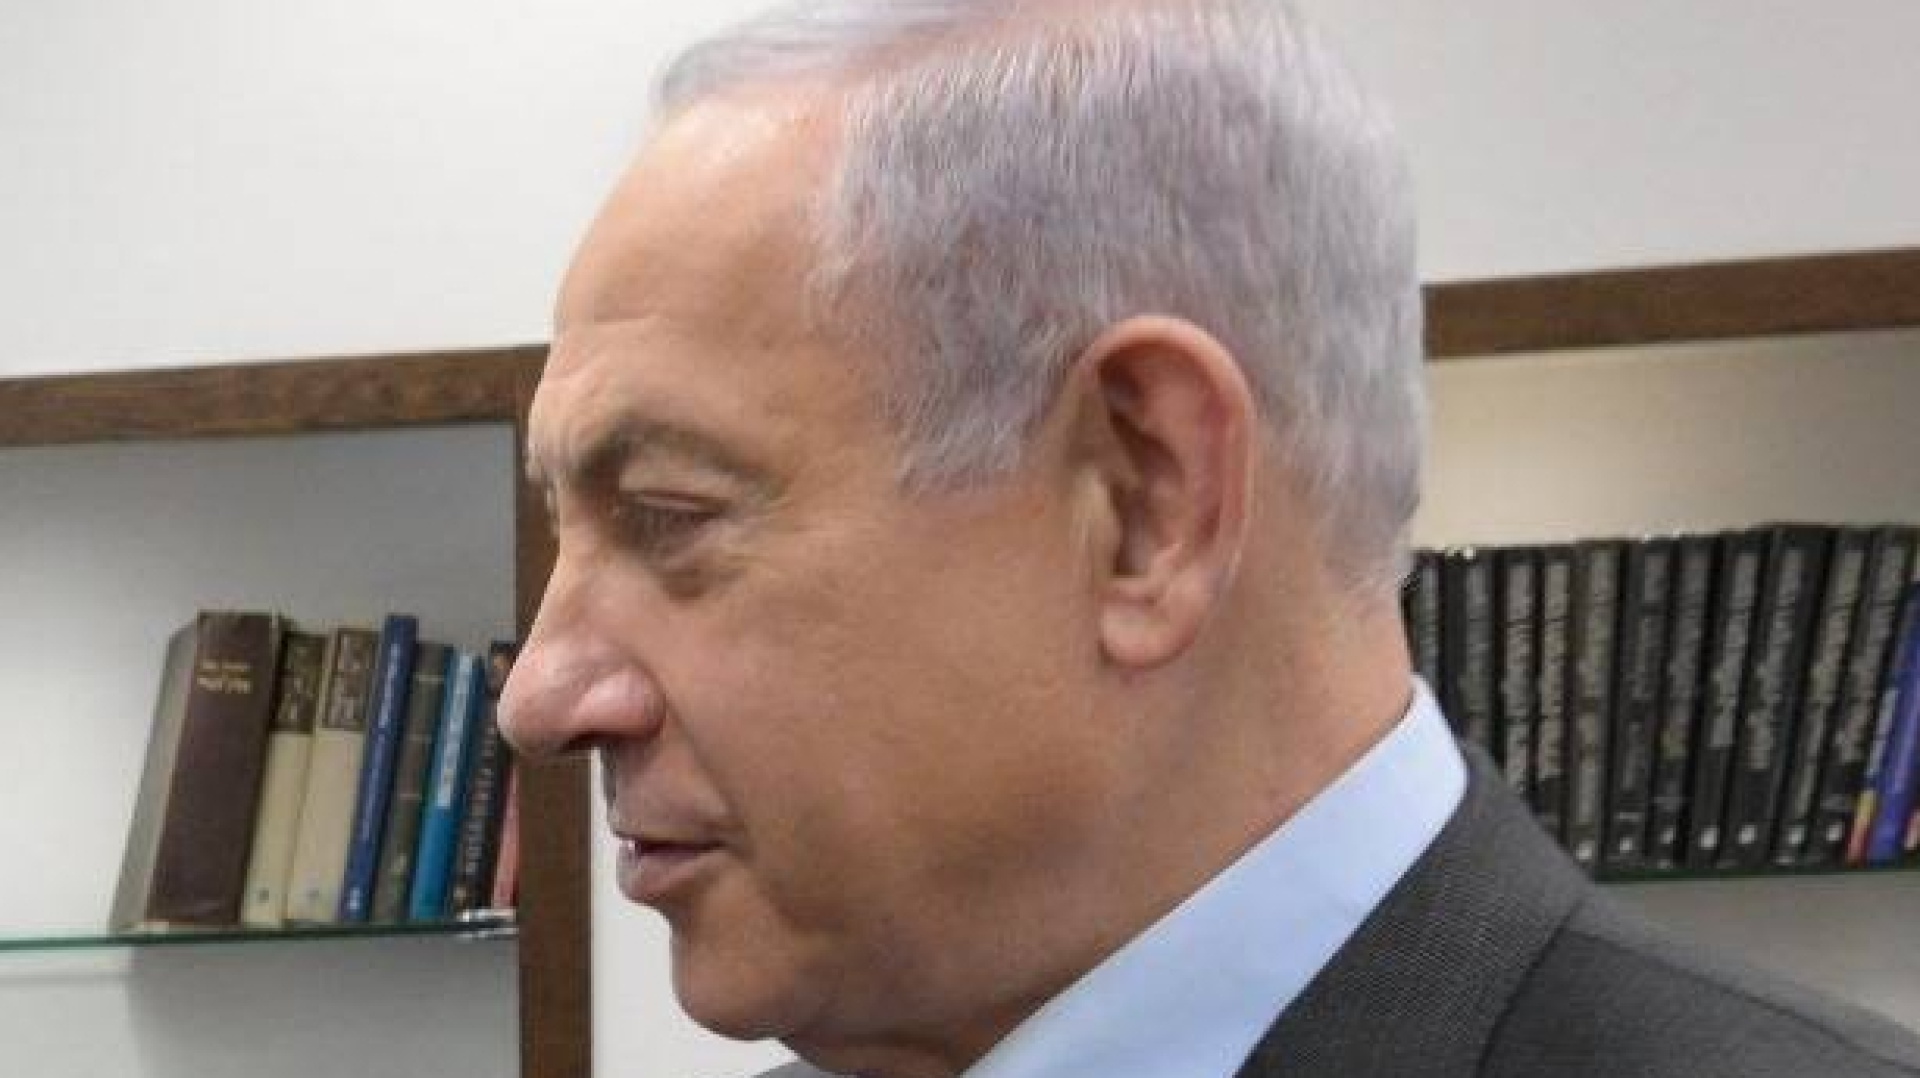 Questo è l'Inizio della Fine - Pagina 13 Netanyahu-avverte-lairan-se-ci-attacca-gli-faremo-male-wide-site-1urzy